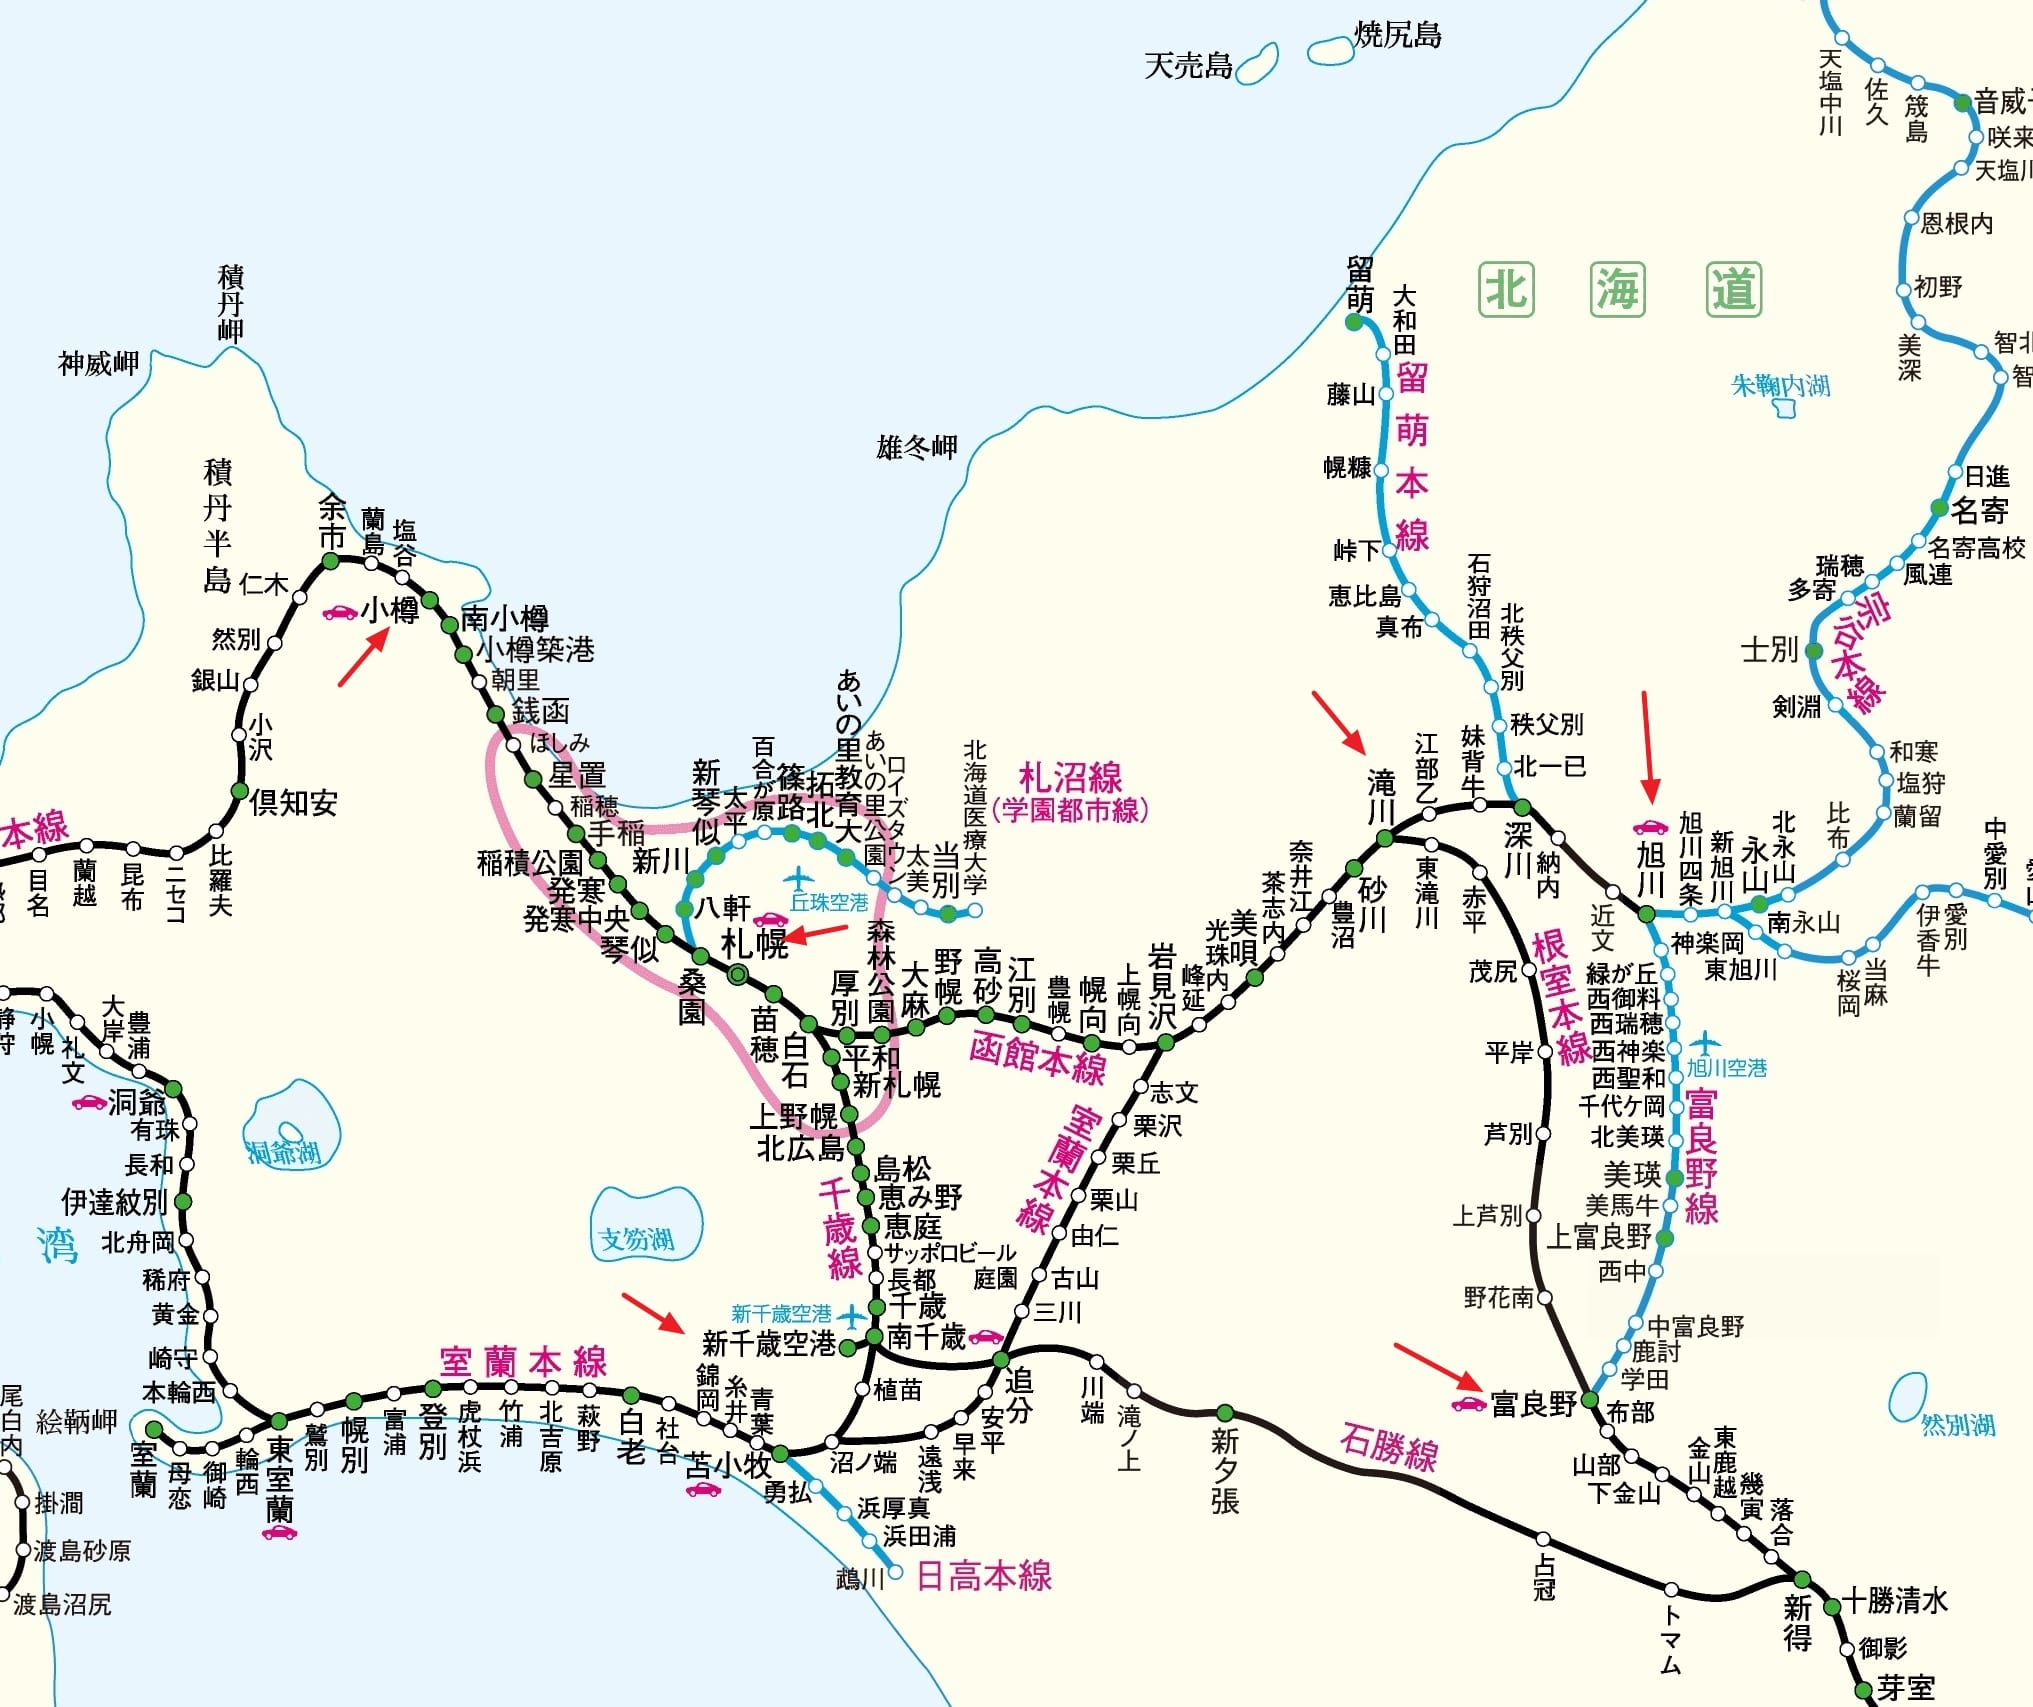 北海道JR PASS|札幌-富良野區域鐵路周遊券使用區間、購買方式